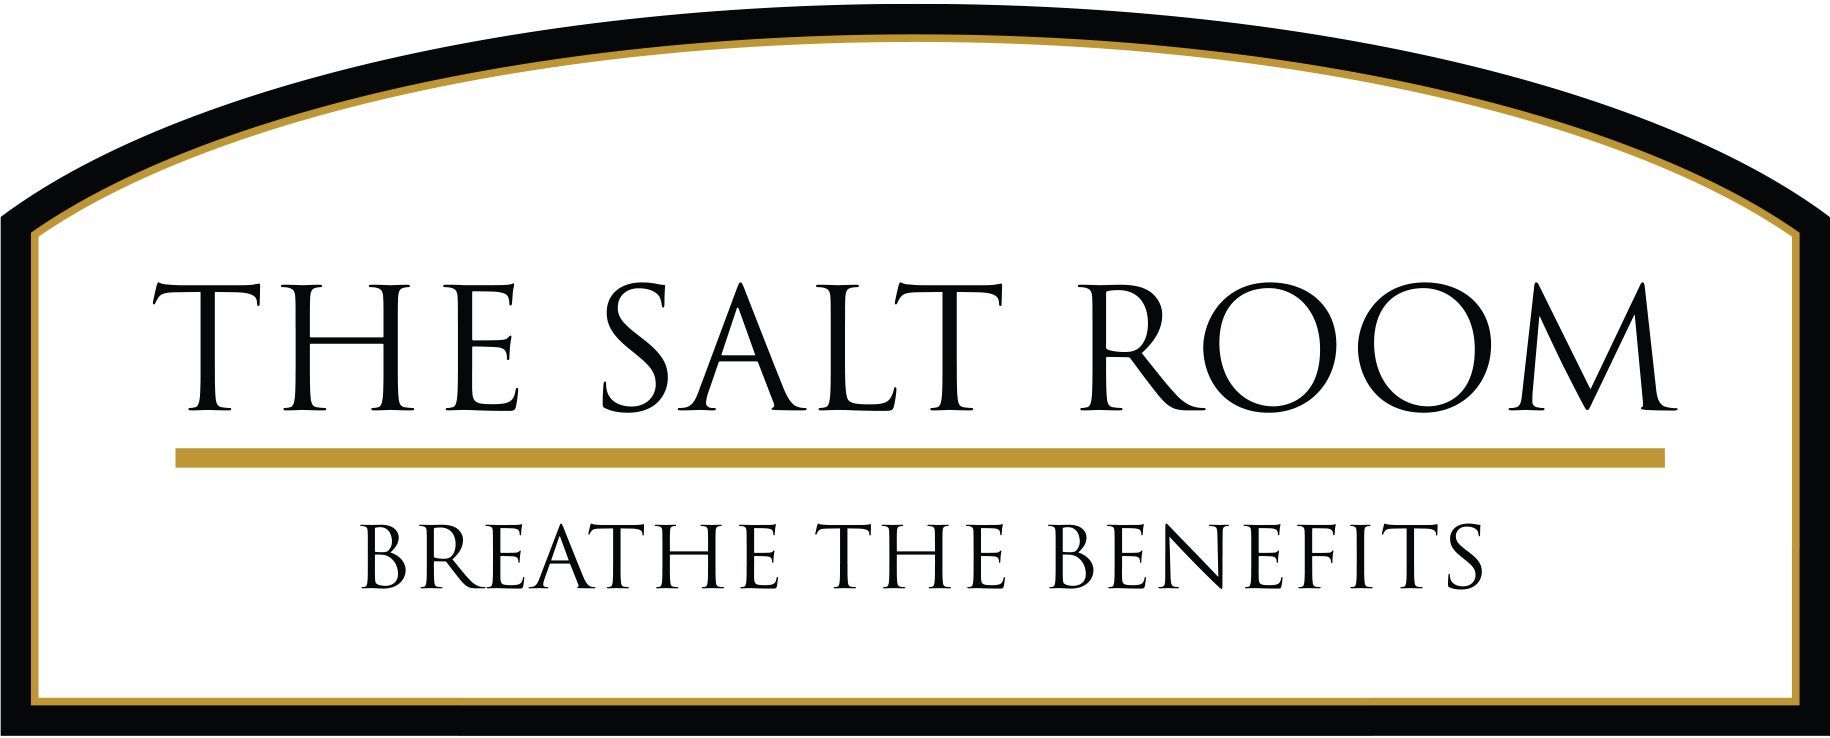 The Salt Room